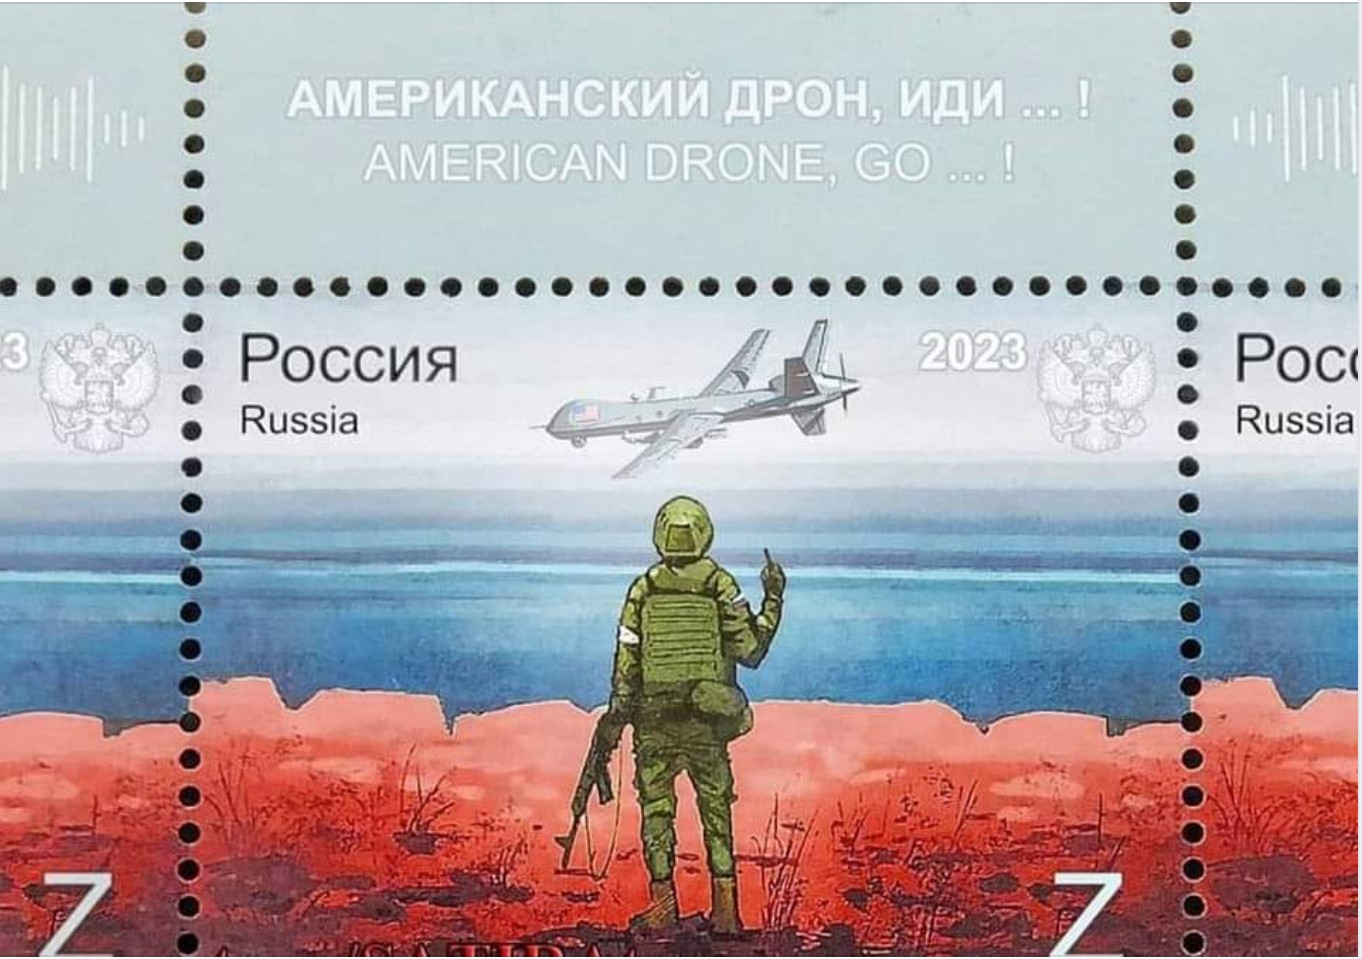 Жалюгідний та нікчемний плагіат: у Росії з'явився дизайн марки "американський дрон іди нах*й" 